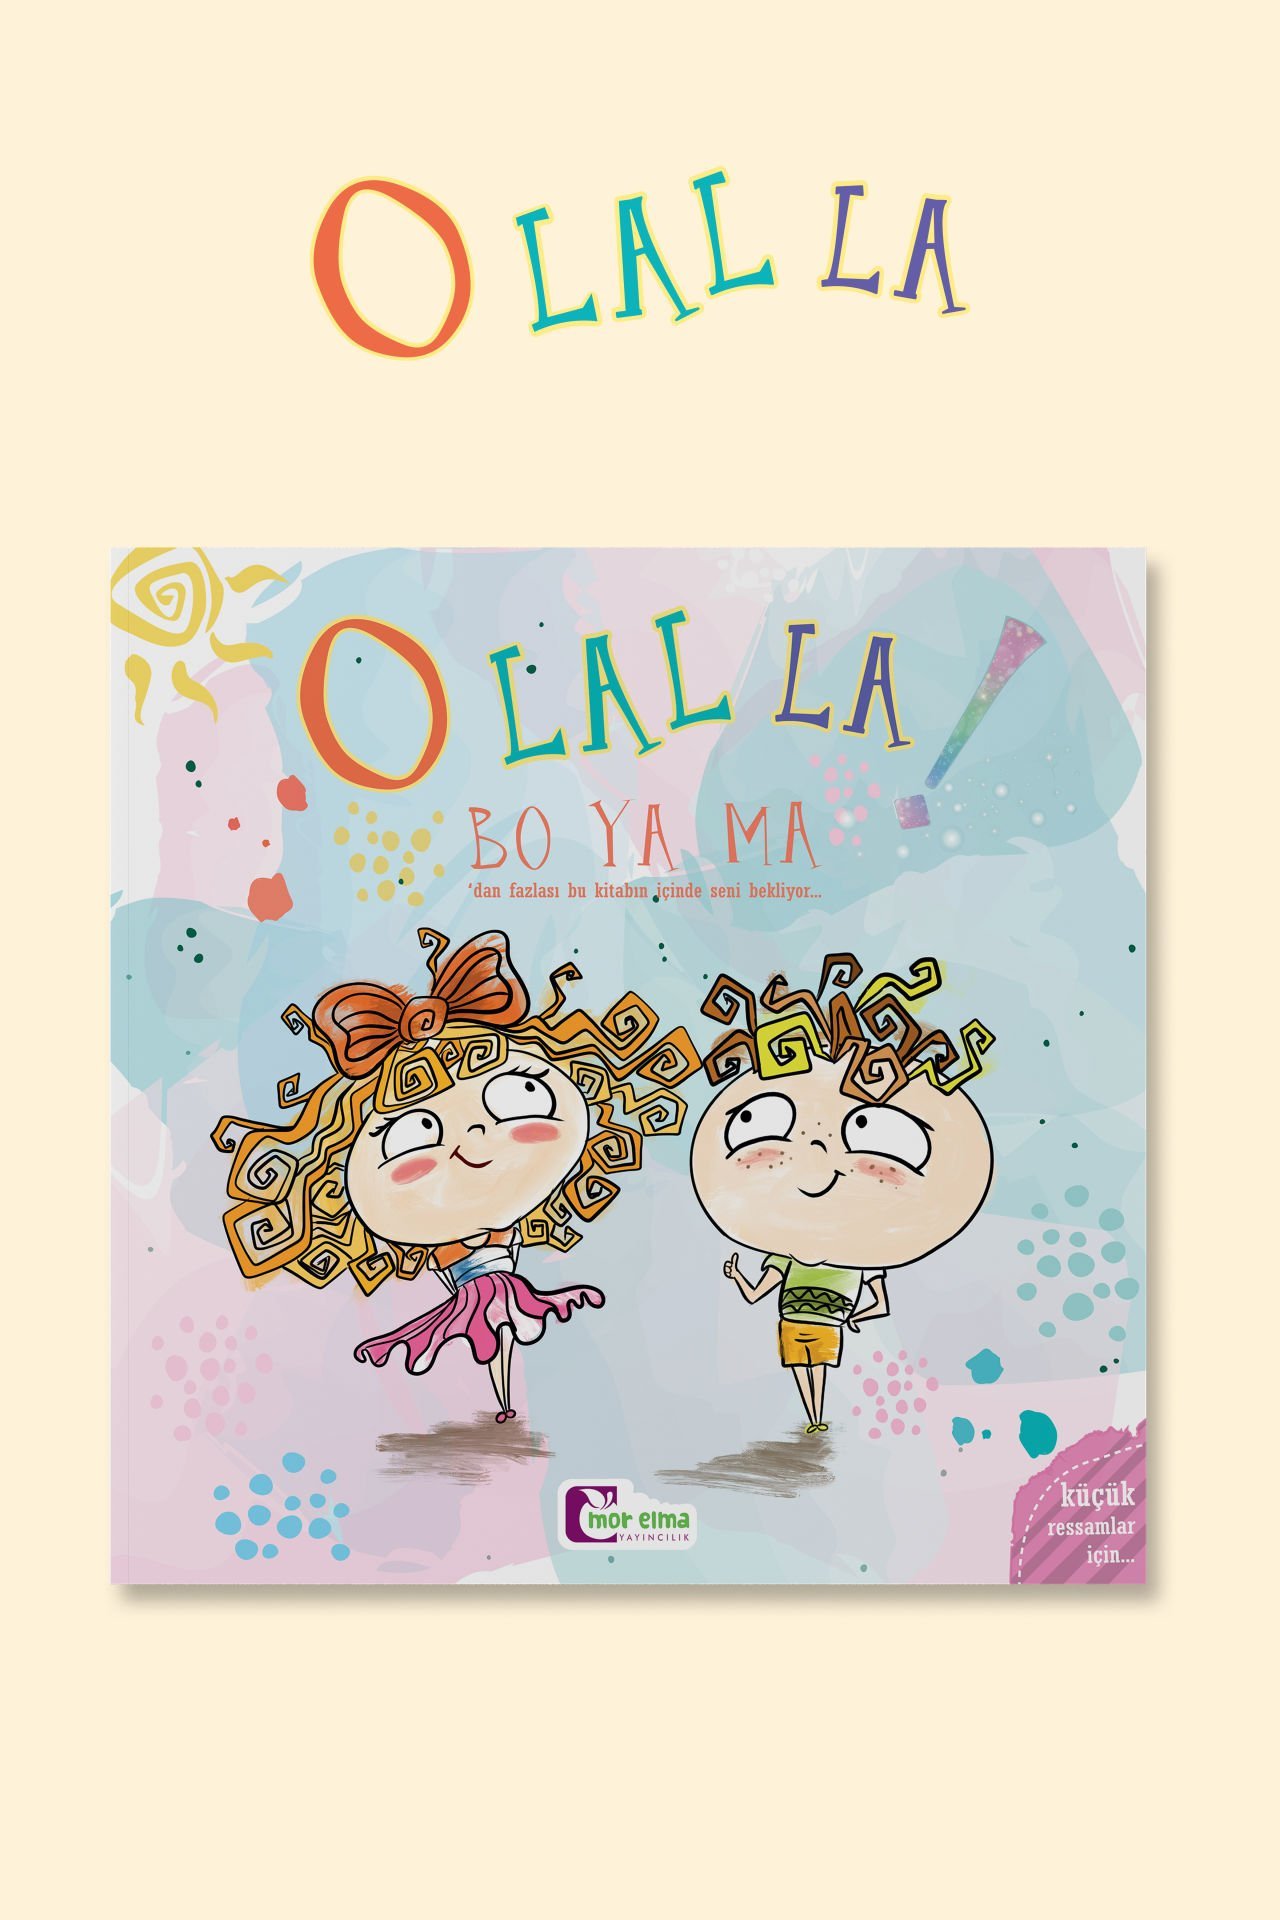 O Lal La - Boyama Kitabı - Kolektif - Mor Elma Yayınları